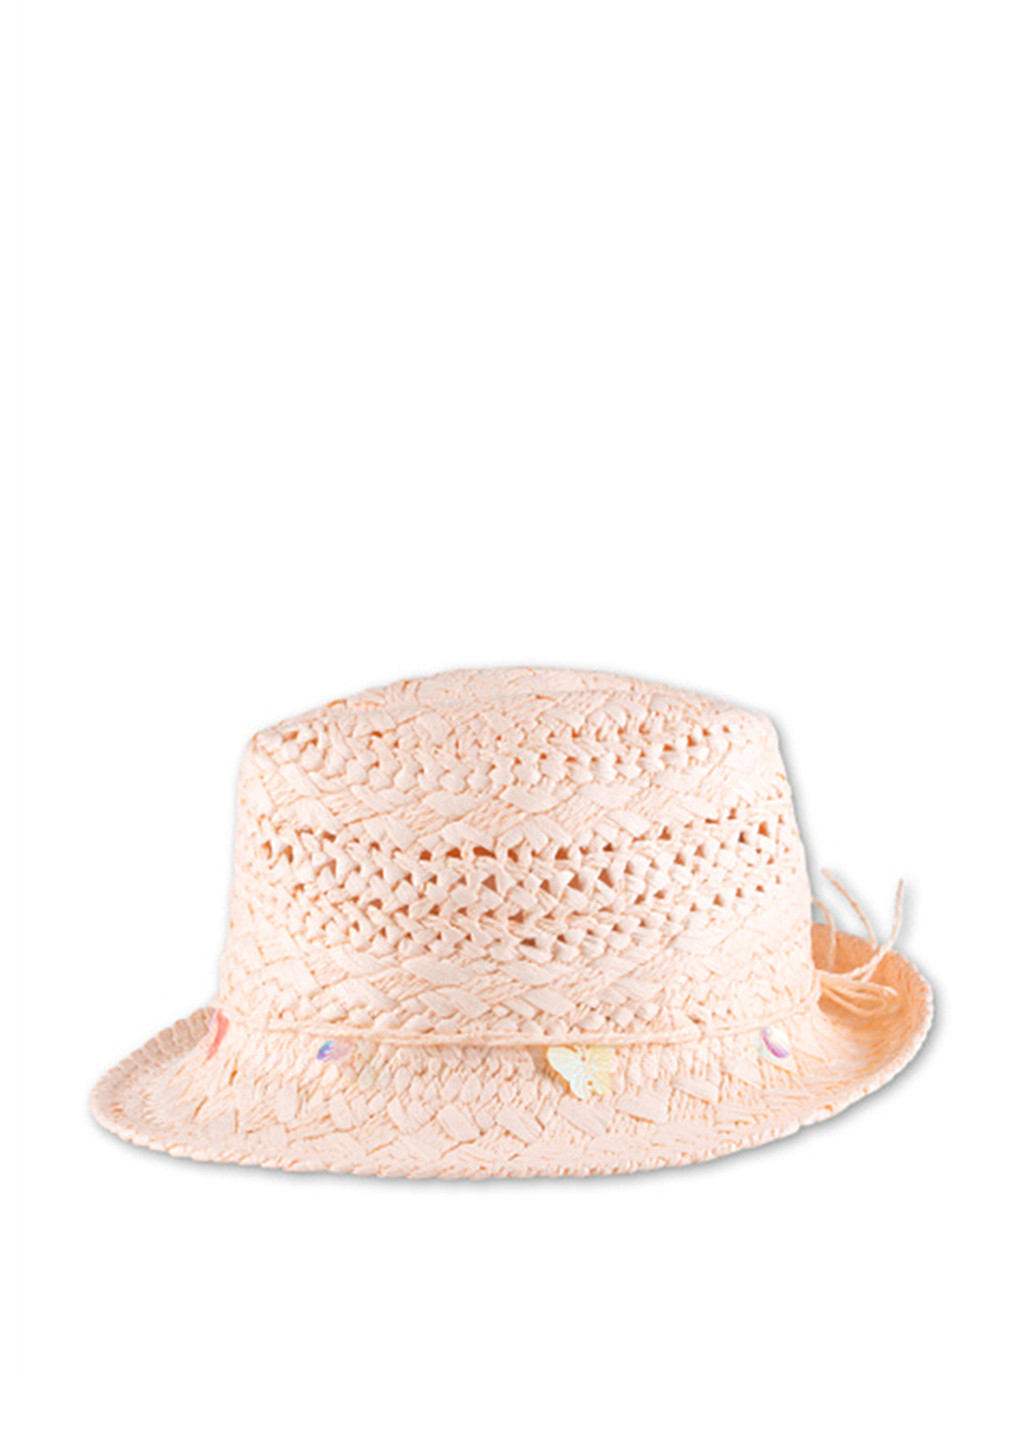 Шляпа C&A с маленькими полями однотонная пудровая пляжная искусственная солома